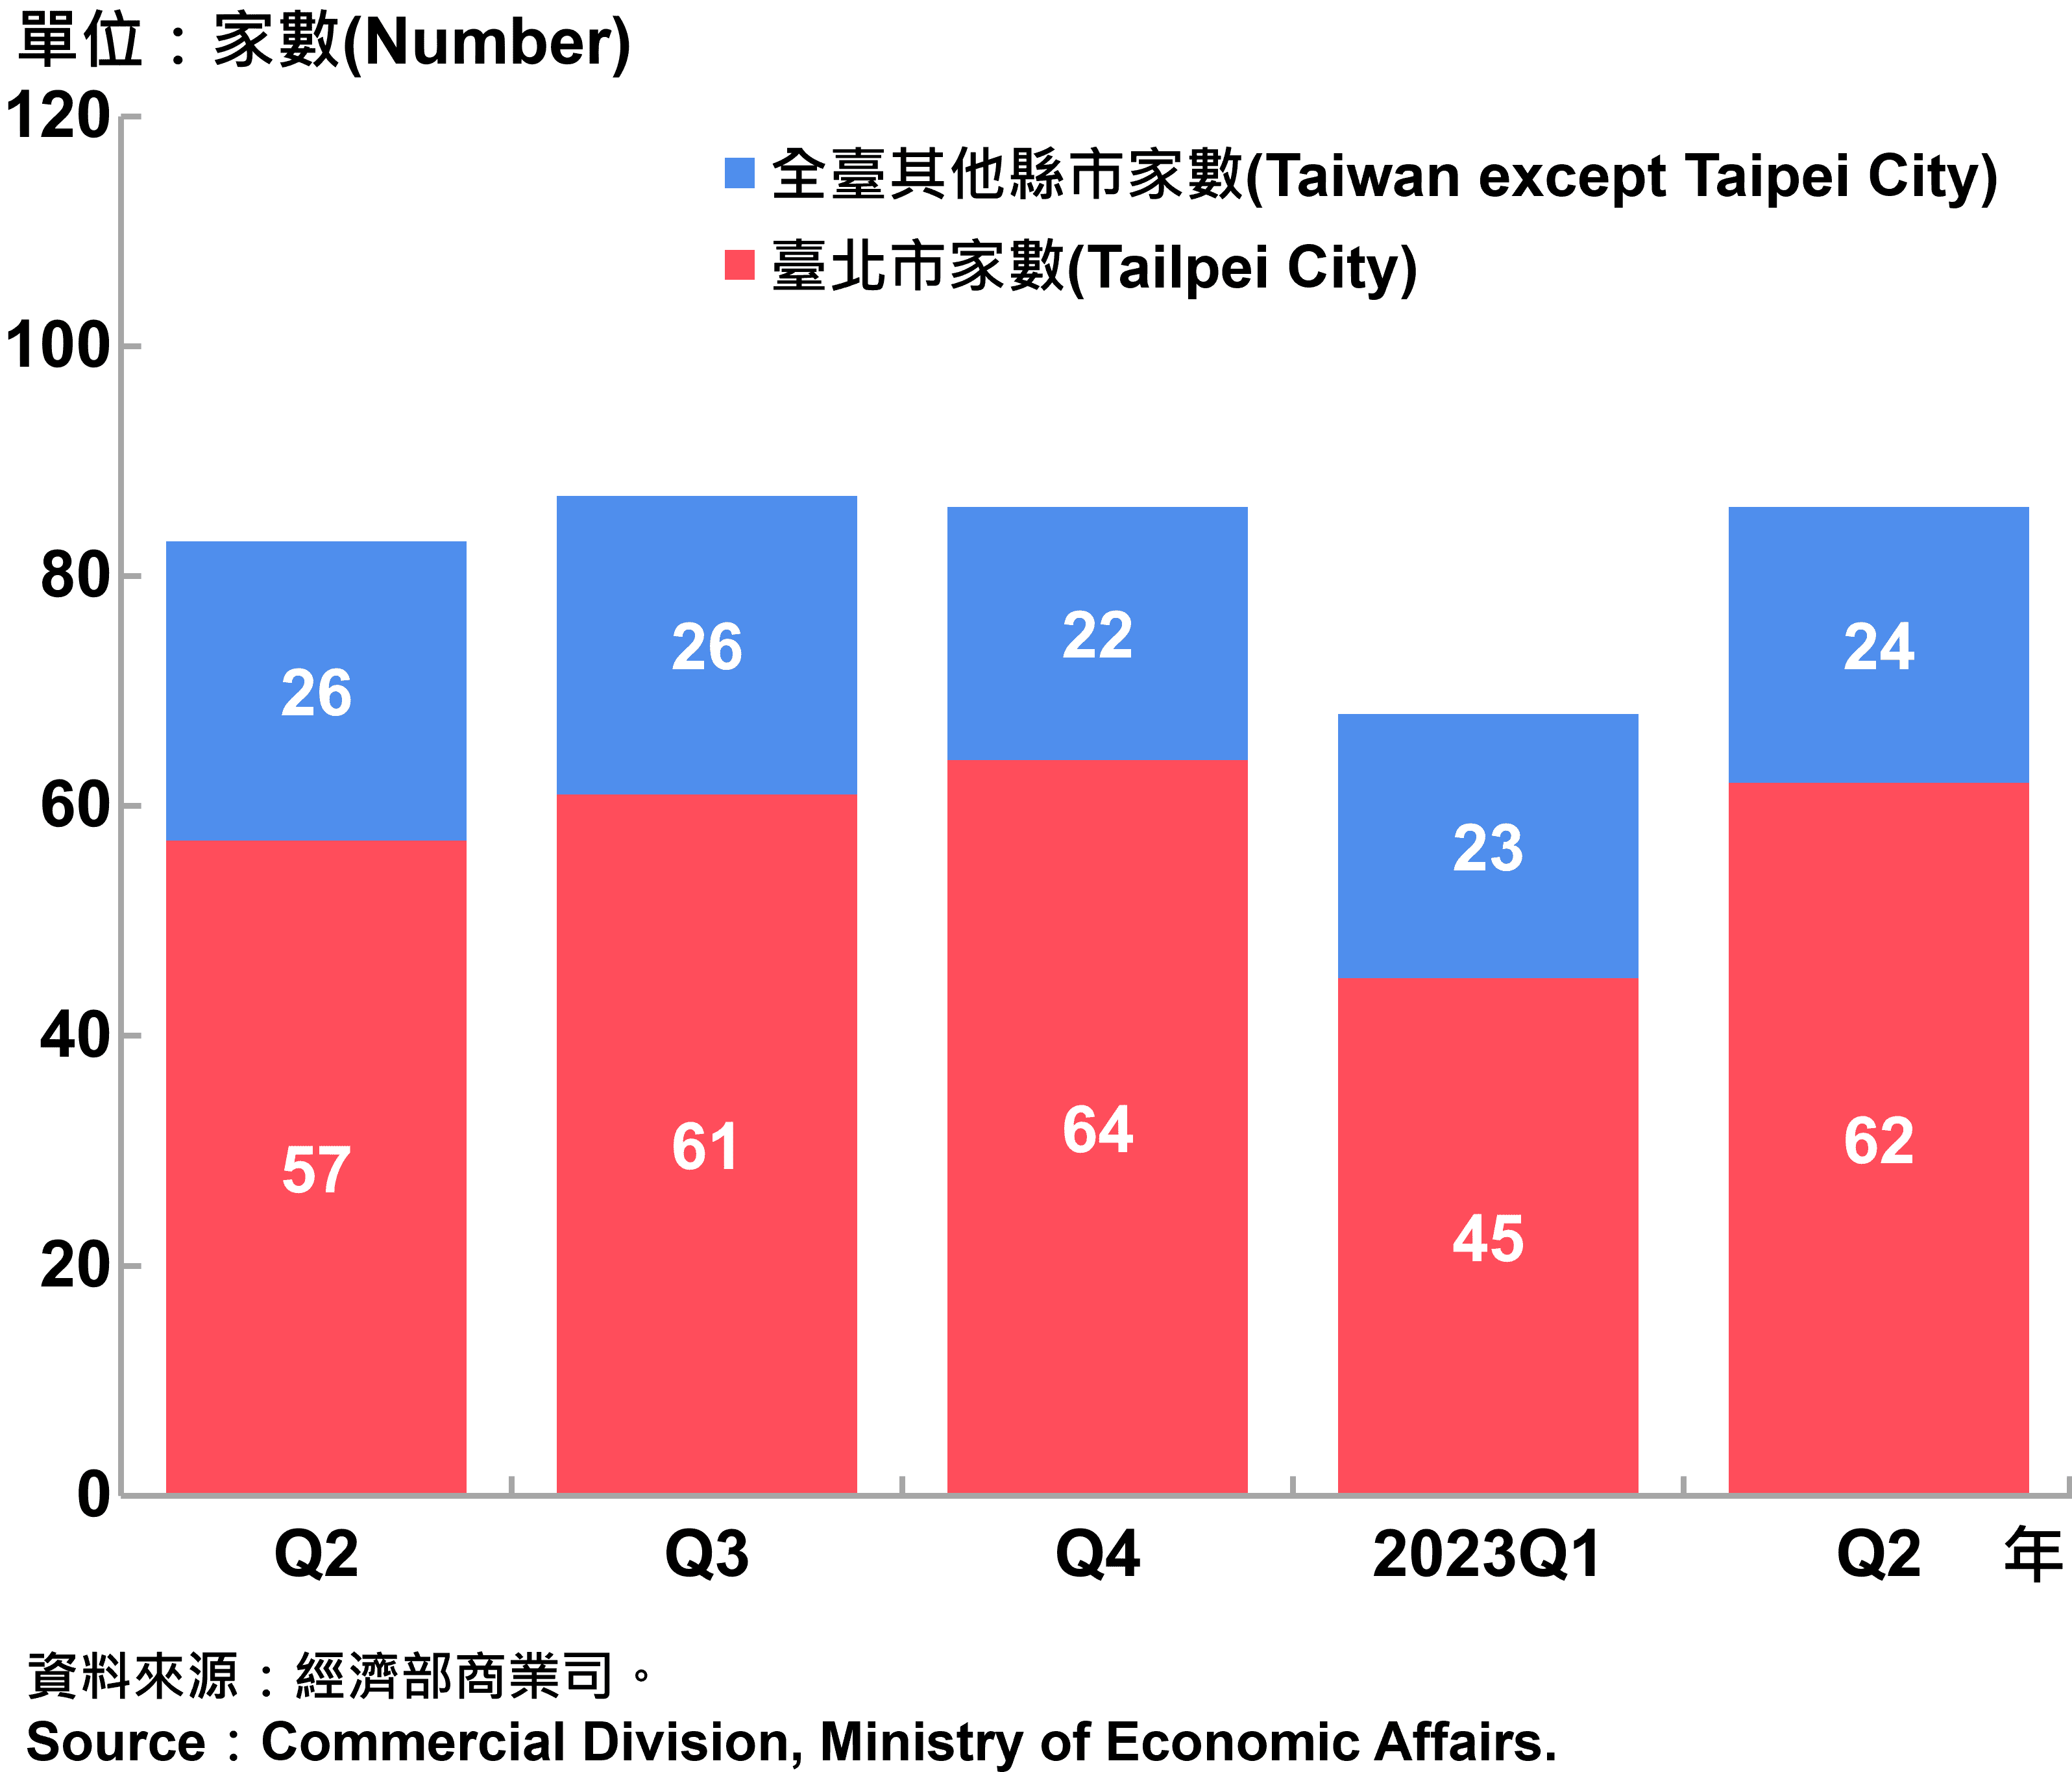  臺北市外商公司新設立家數—2023Q2 Number of Newly Established Foreign Companies in Taipei City—2023Q2